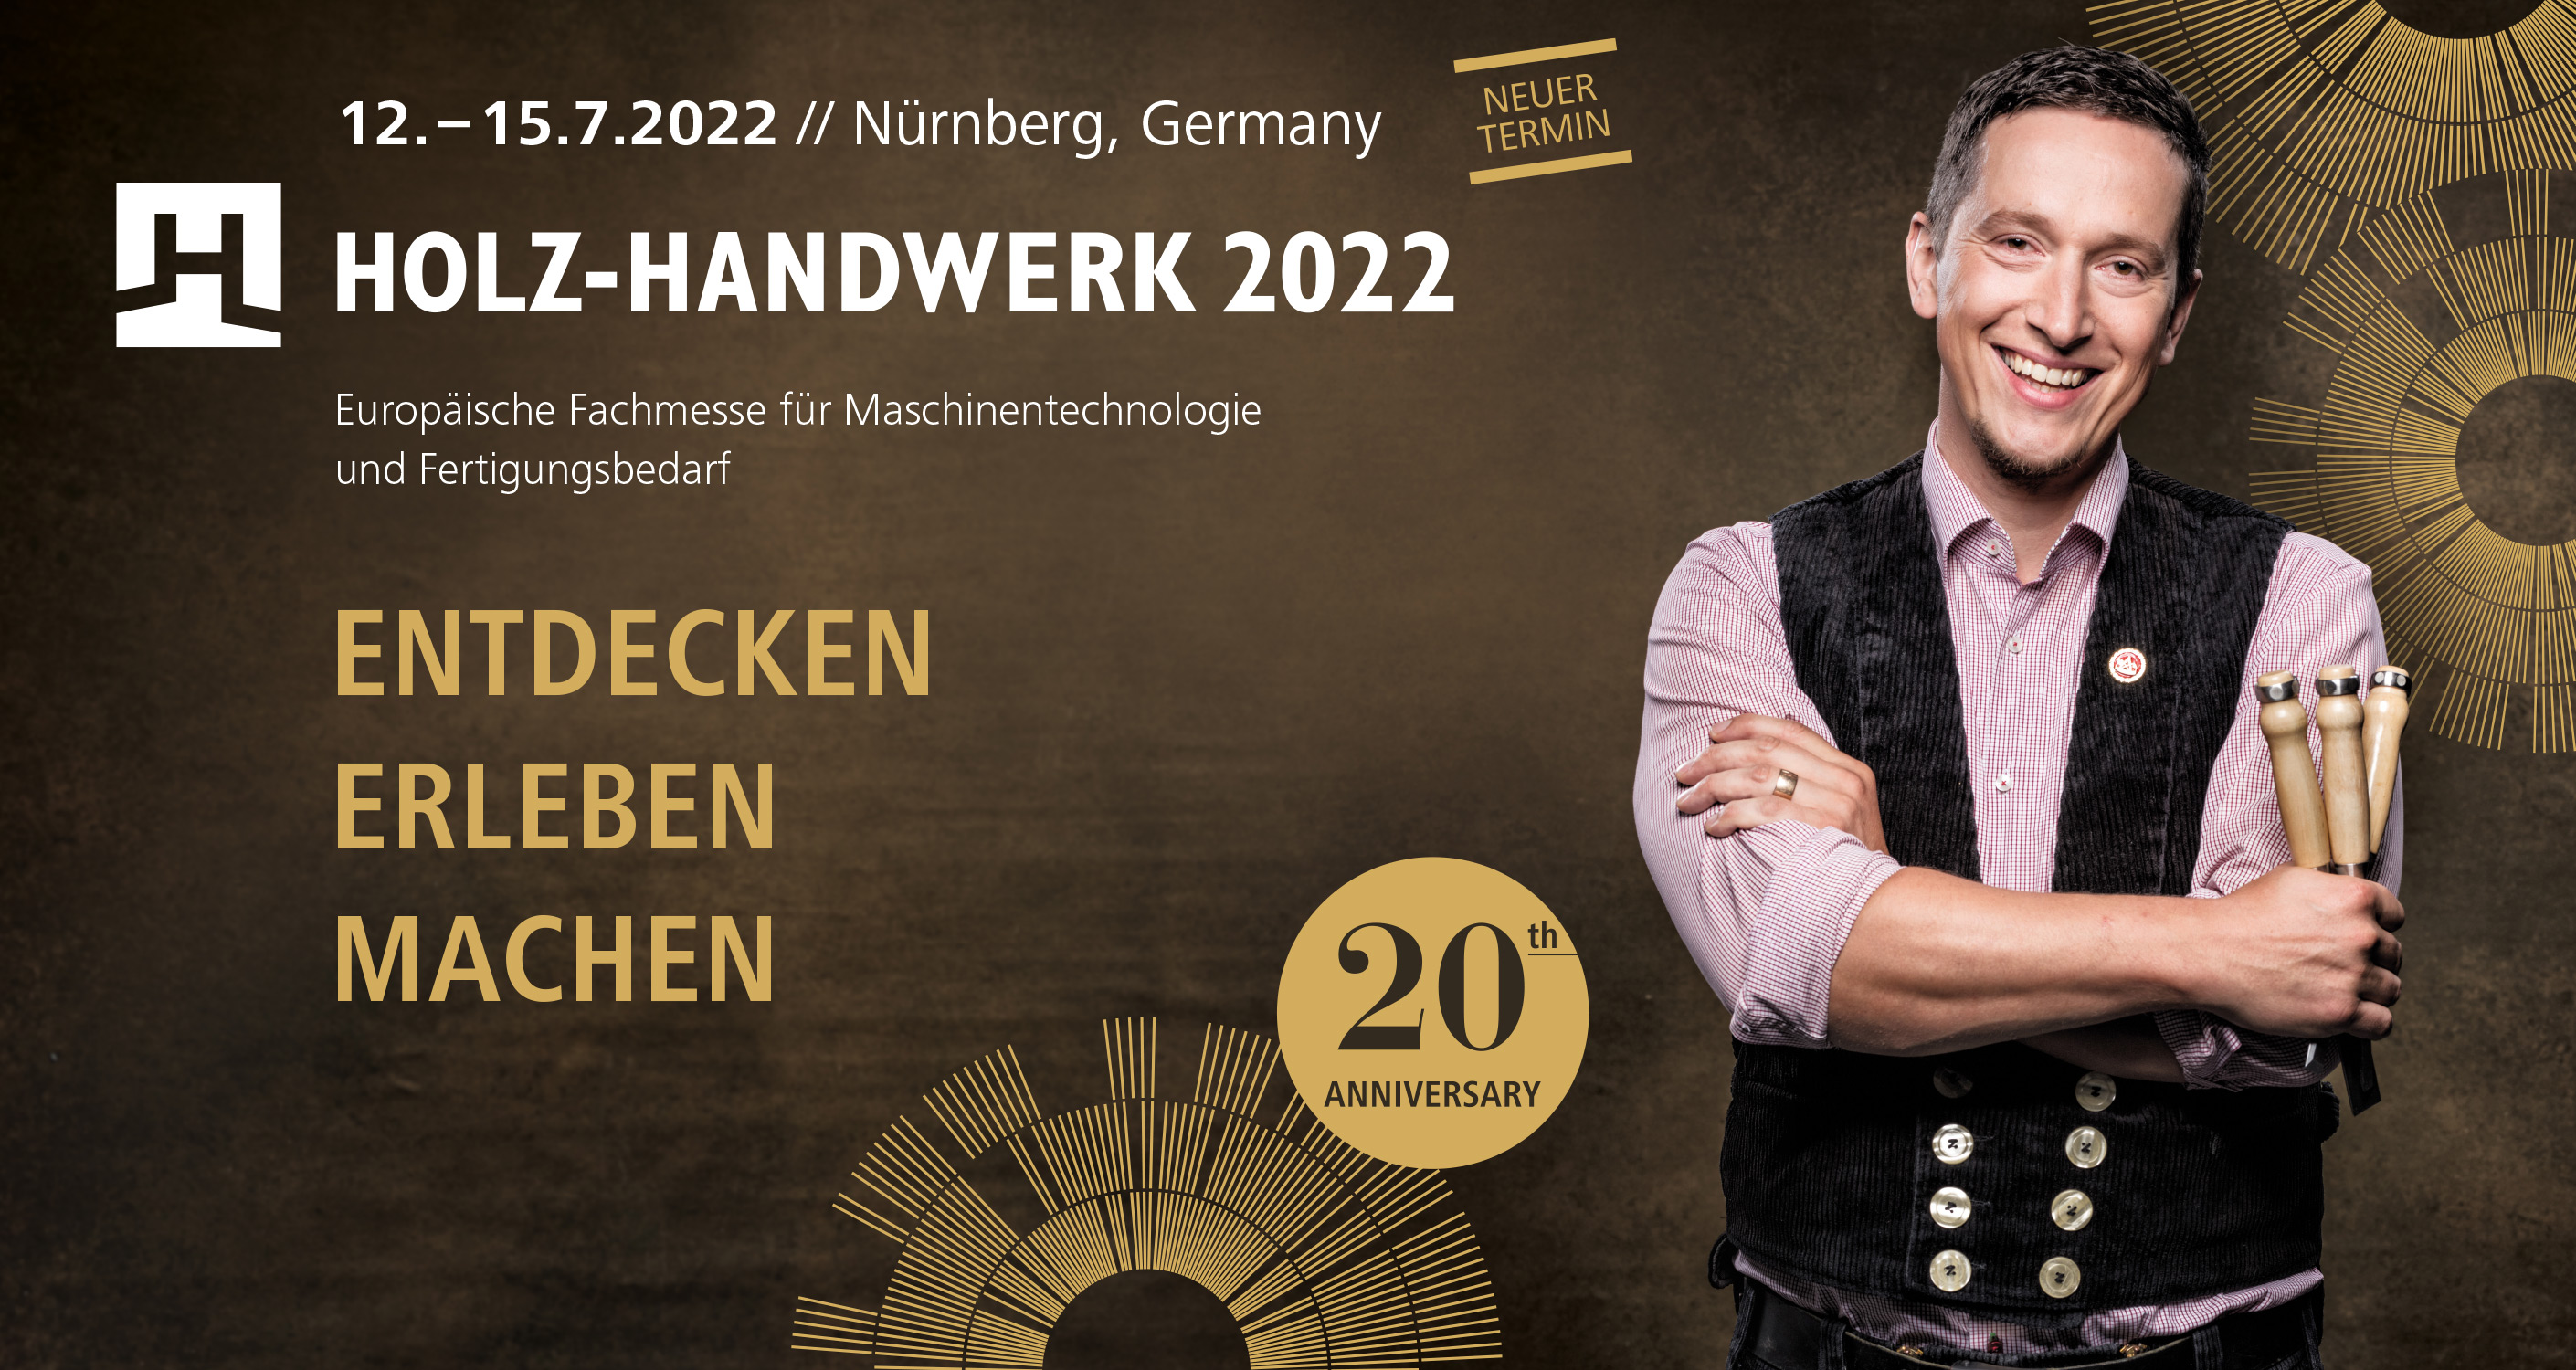 HOLZ-HANDWERK 2022